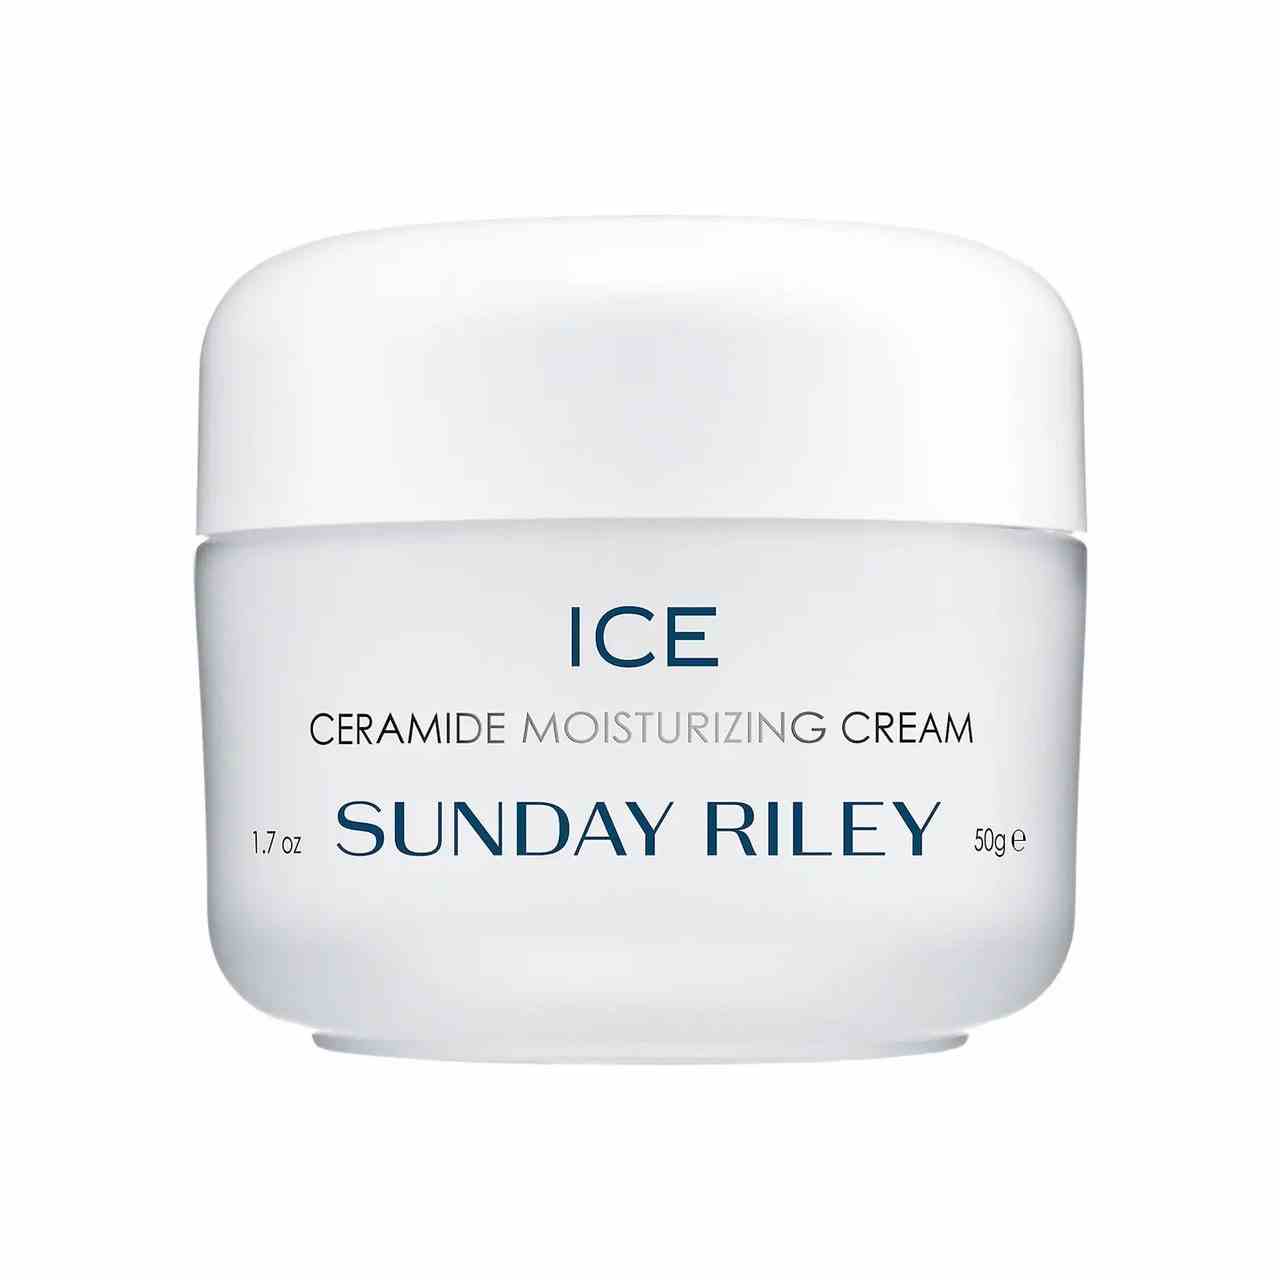 Sunday Riley Ice Ceramide Moisturizing Cream weißes Glas auf weißem Hintergrund